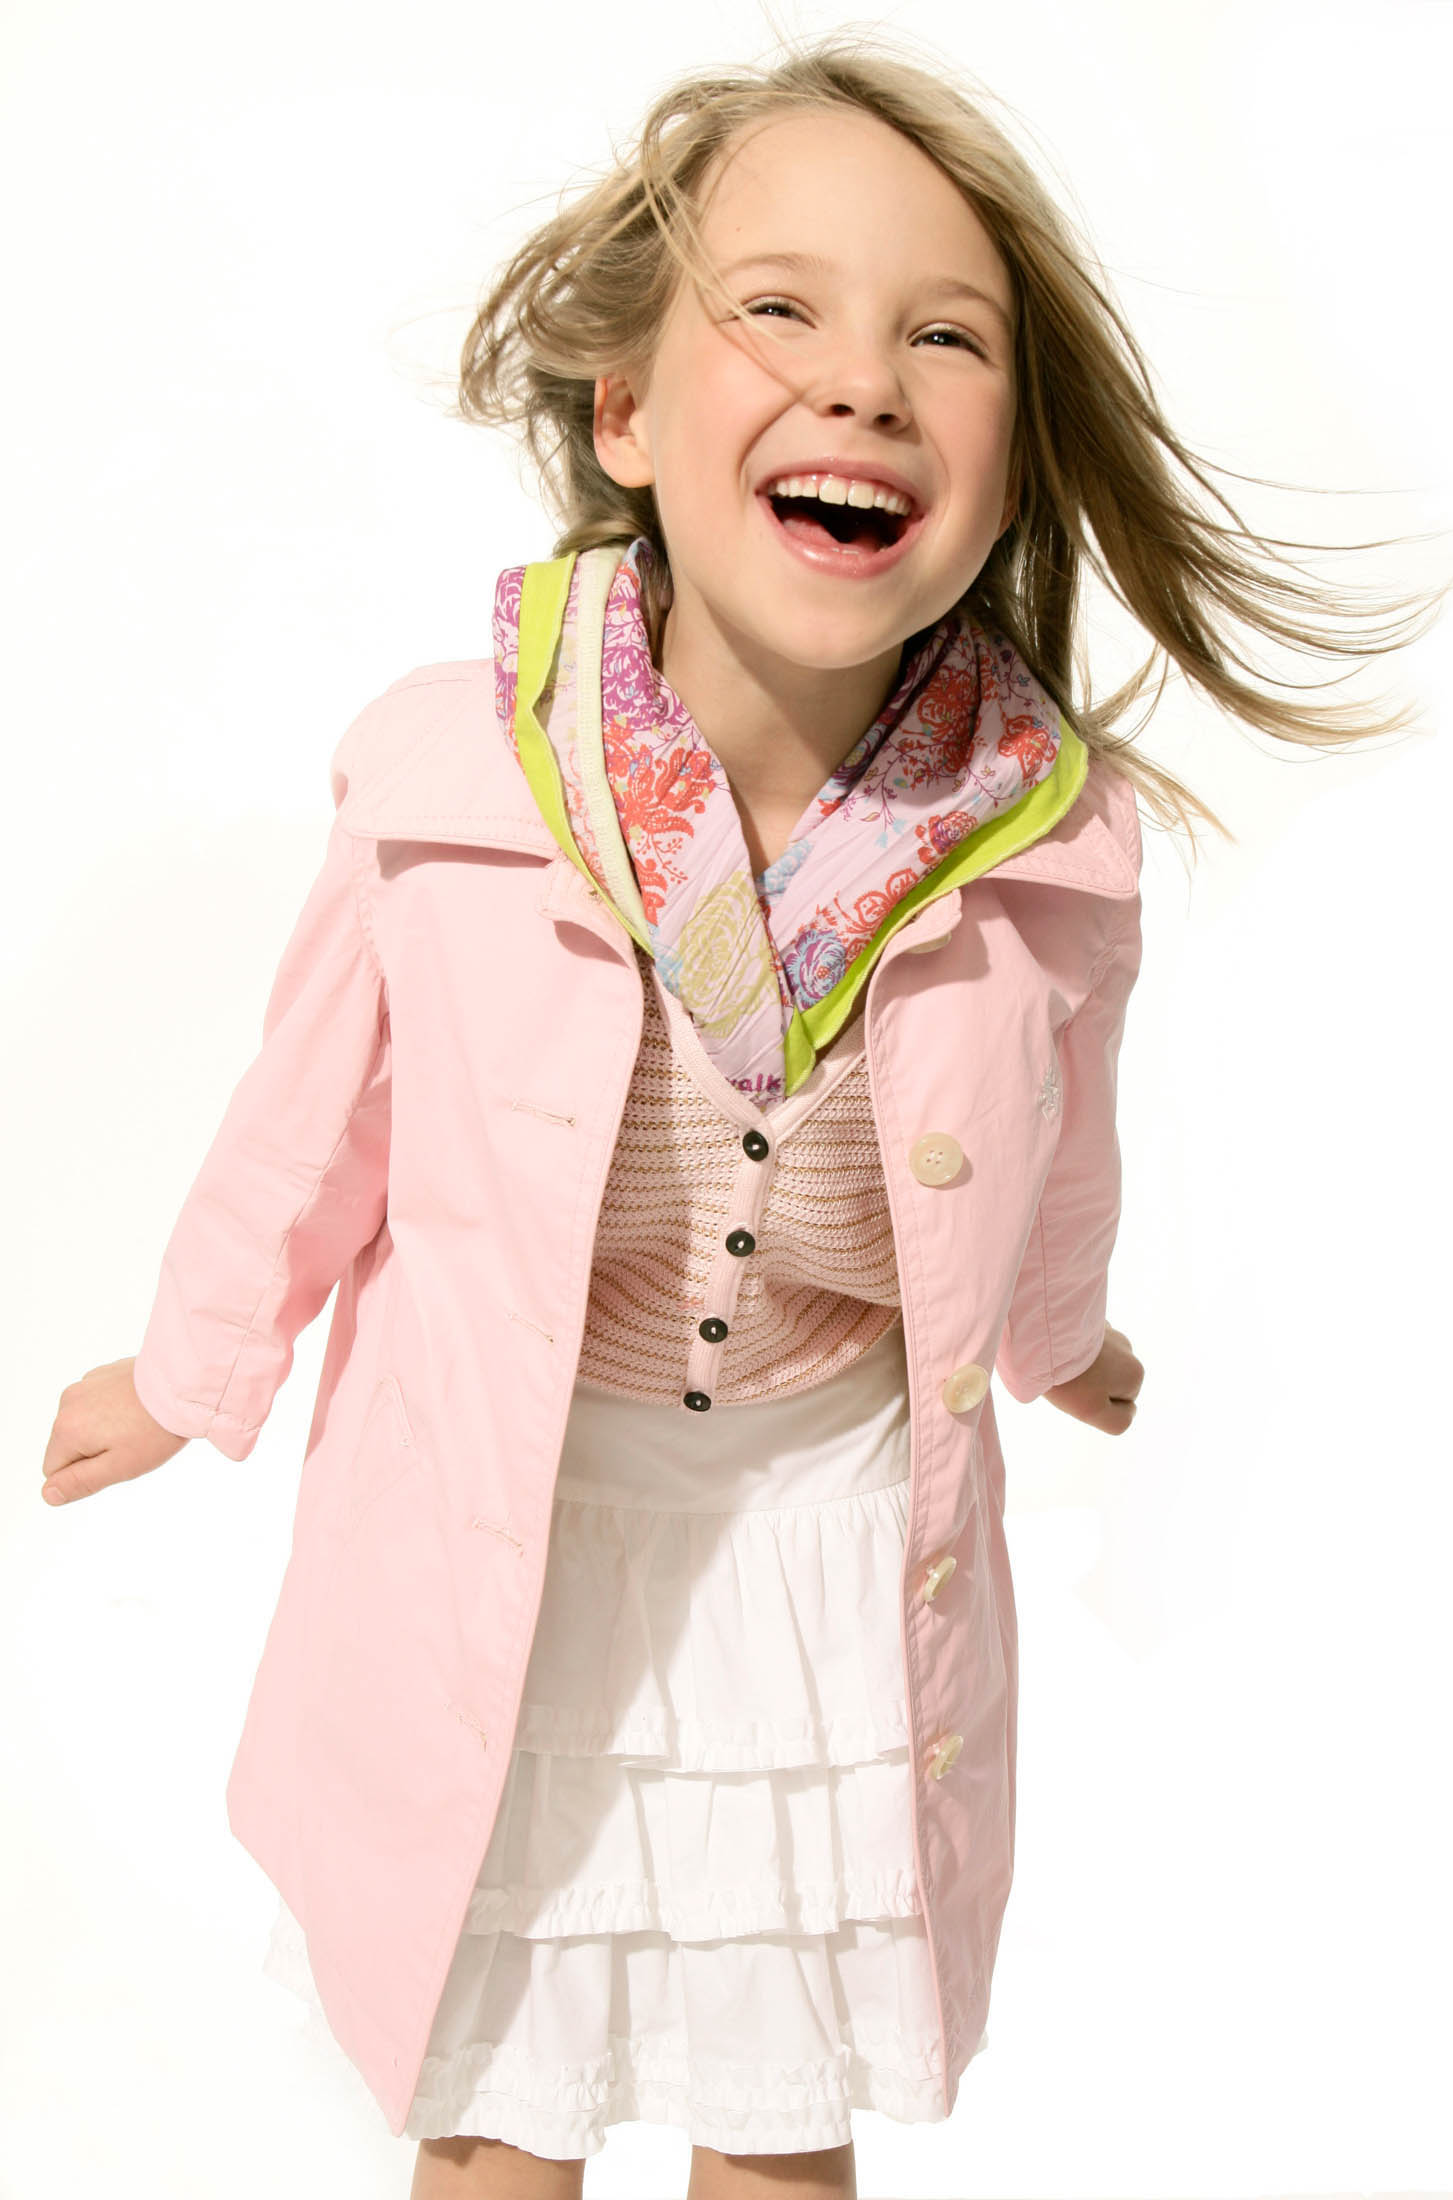 Ein fröhliches junges Mädchen mit wallendem blondem Haar, das einen hellrosa Mantel über einem weißen Kleid trägt, lacht, während sie vor einem weißen Hintergrund auf die Kamera zuläuft. © Fotografie Tomas Rodriguez